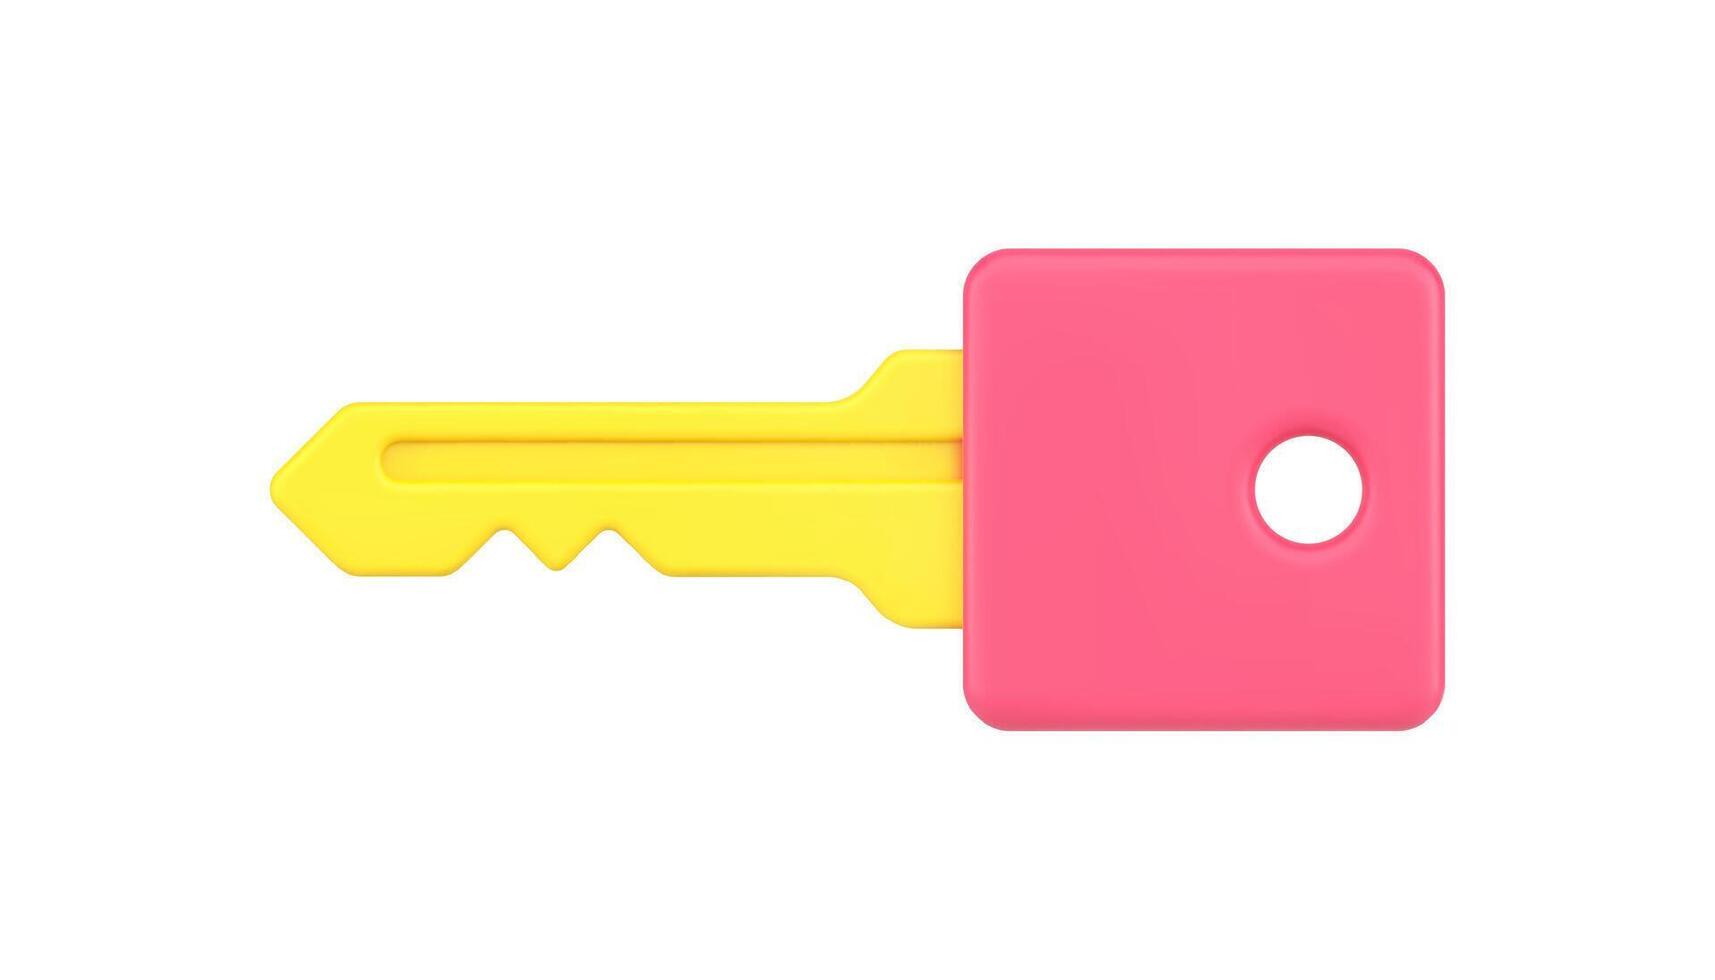 Gold Schlüssel mit Rosa Kopf 3d Symbol Illustration vektor